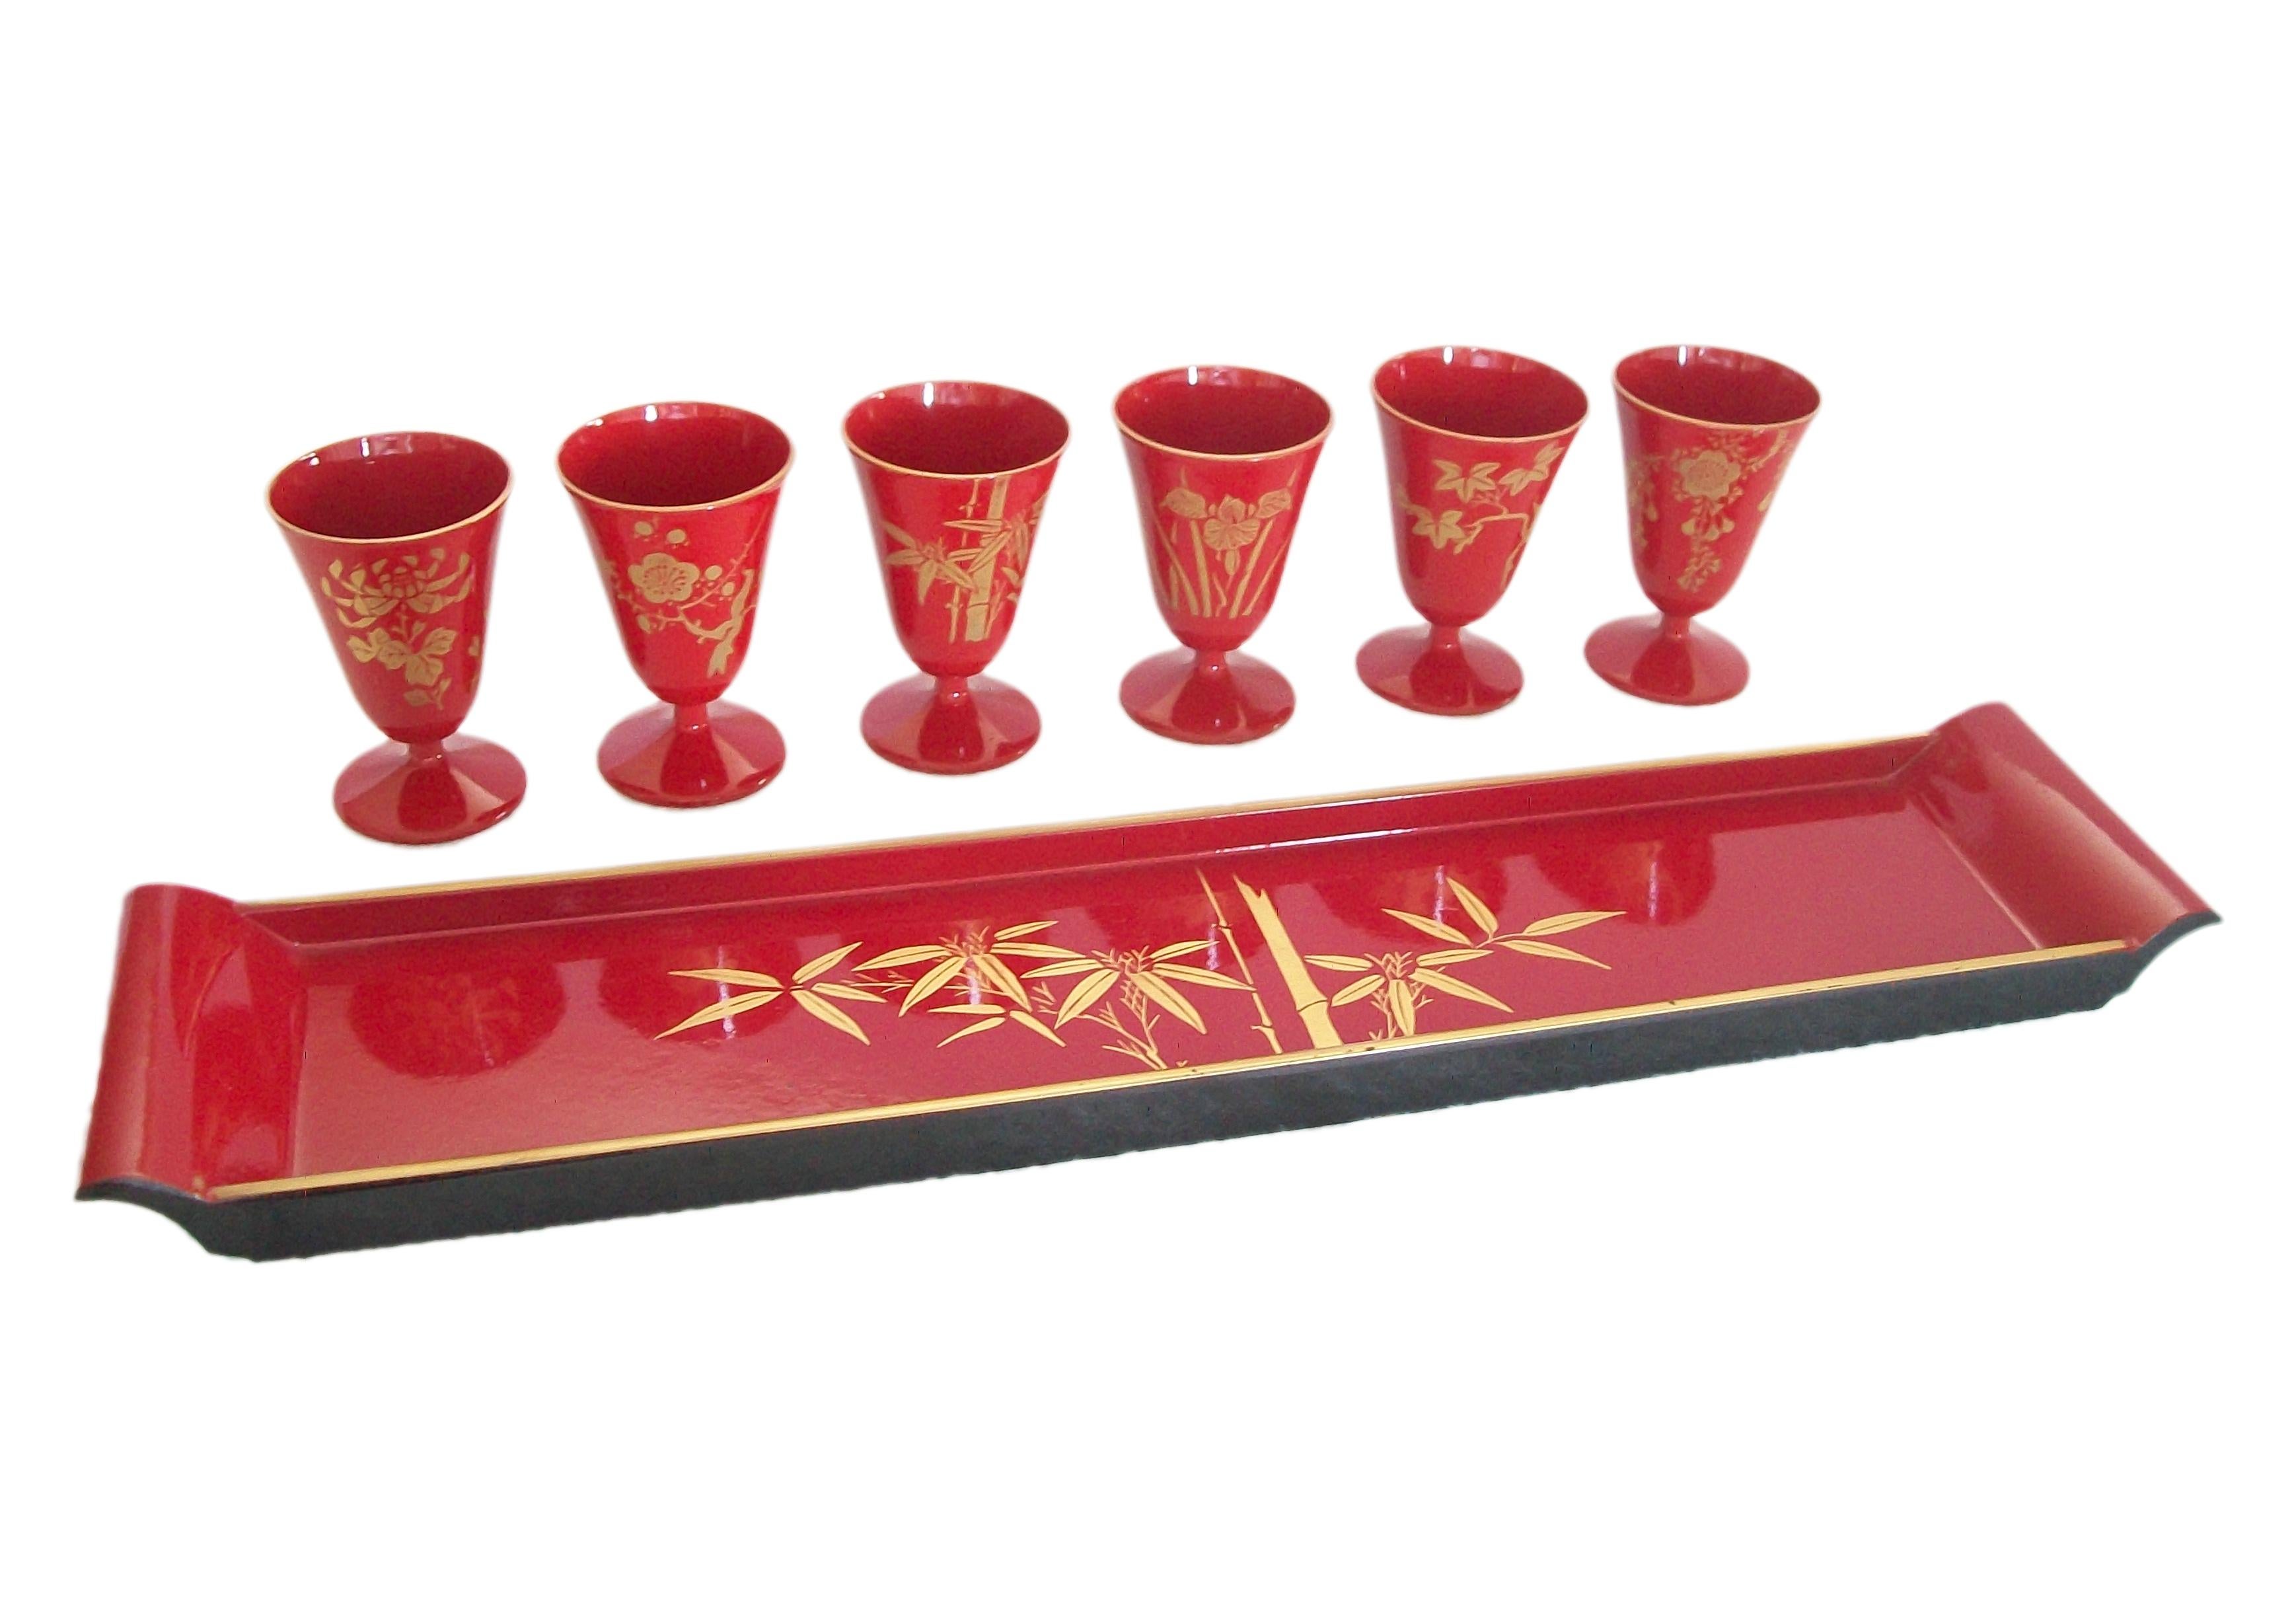 Vintage Urushi plateau en laque rouge avec six tasses à pied - chaque tasse est décorée d'un spécimen différent de fleur, feuille ou bambou - le plateau est décoré de bambou au centre, le dessous est en laque noire - étiquette du fabricant à